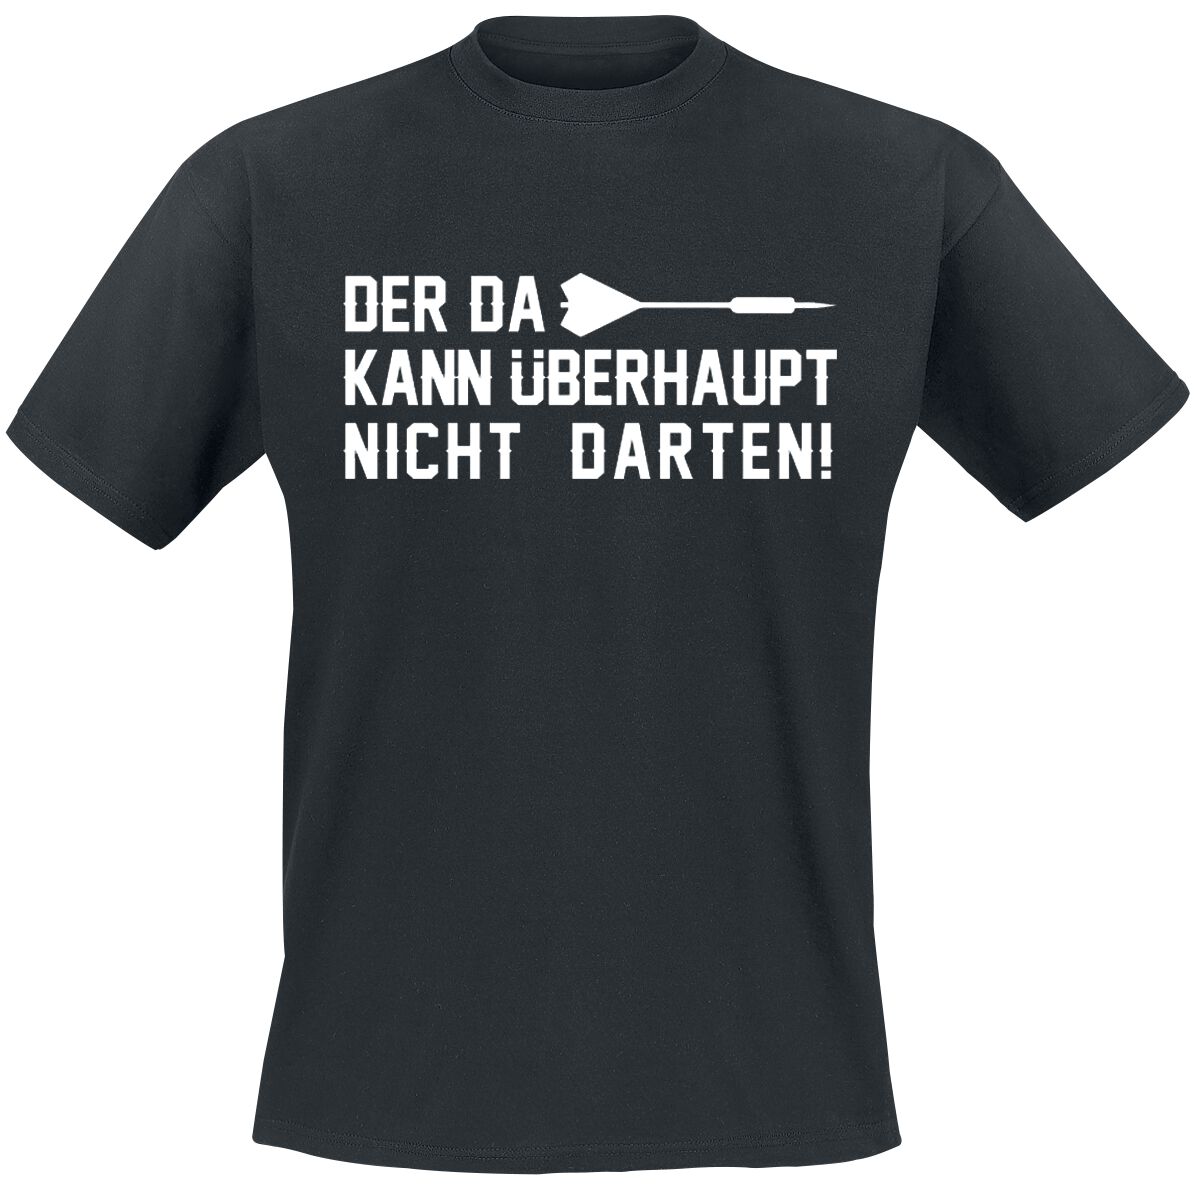 Darts T-Shirt - Der da kann überhaupt nicht darten! - M bis 3XL - für Männer - Größe XXL - schwarz